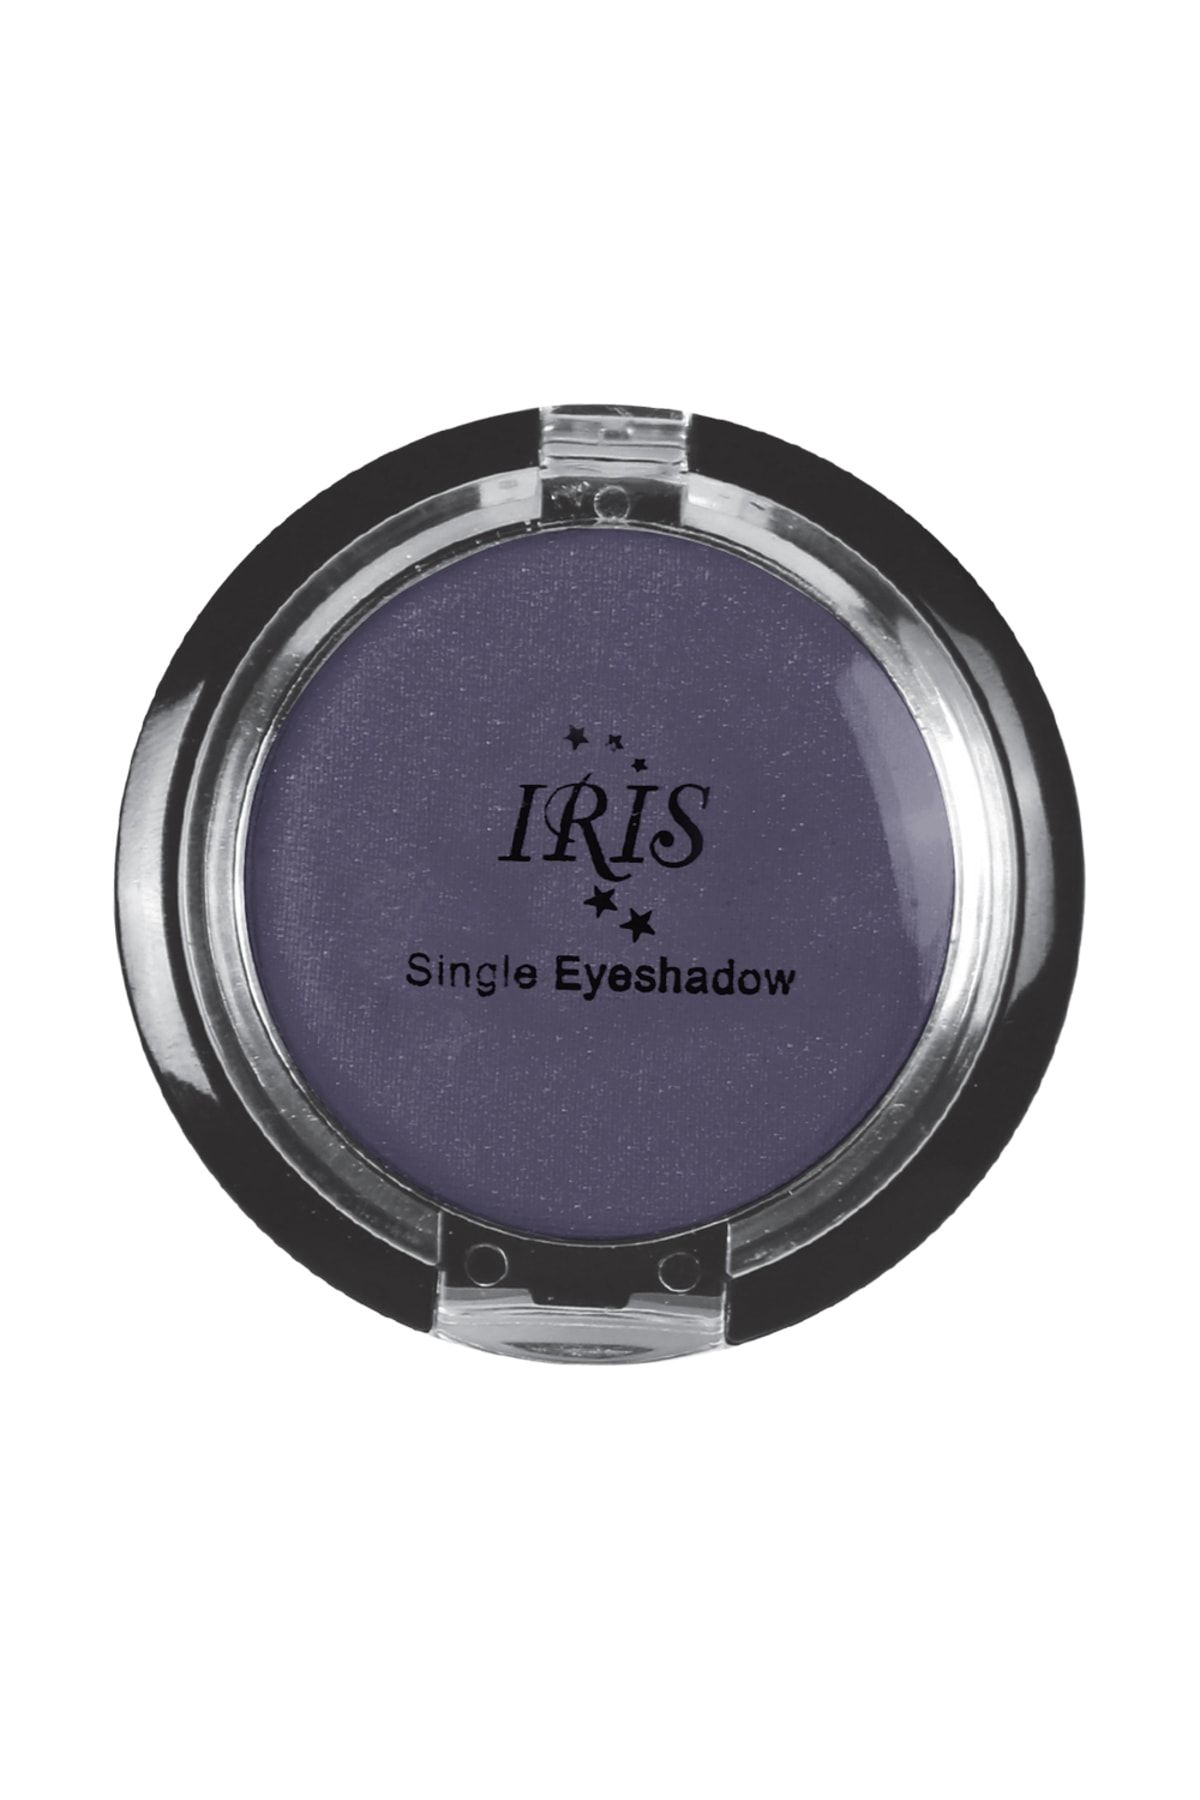 IRIS Göz Farı - Single Eyeshadow 018 8699195992850